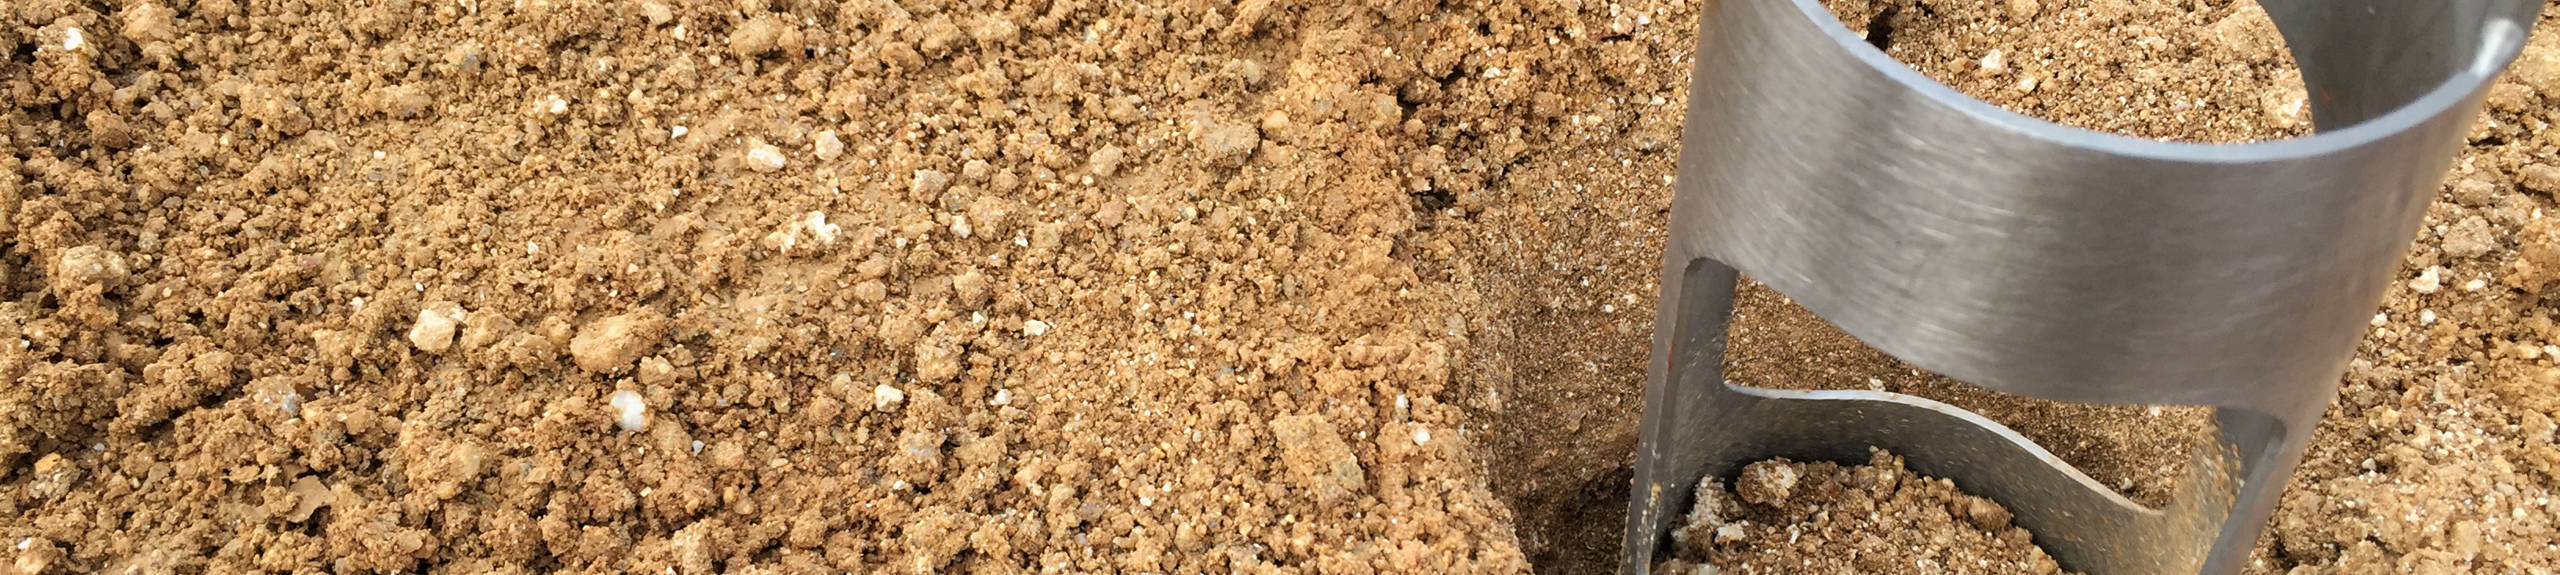 soil sampling